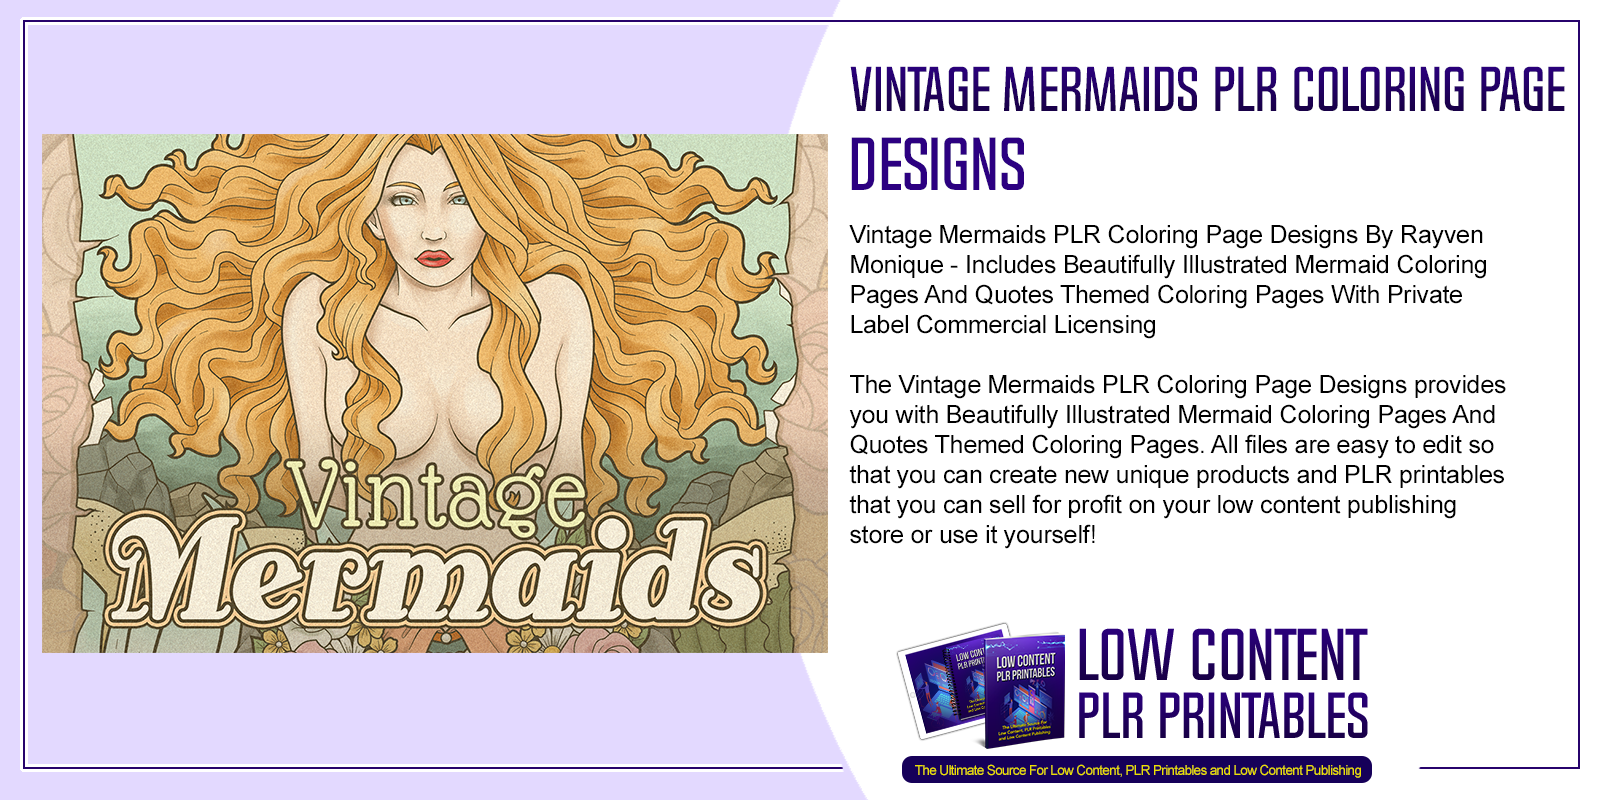 Vintage Mermaids PLR Coloring Page Designs